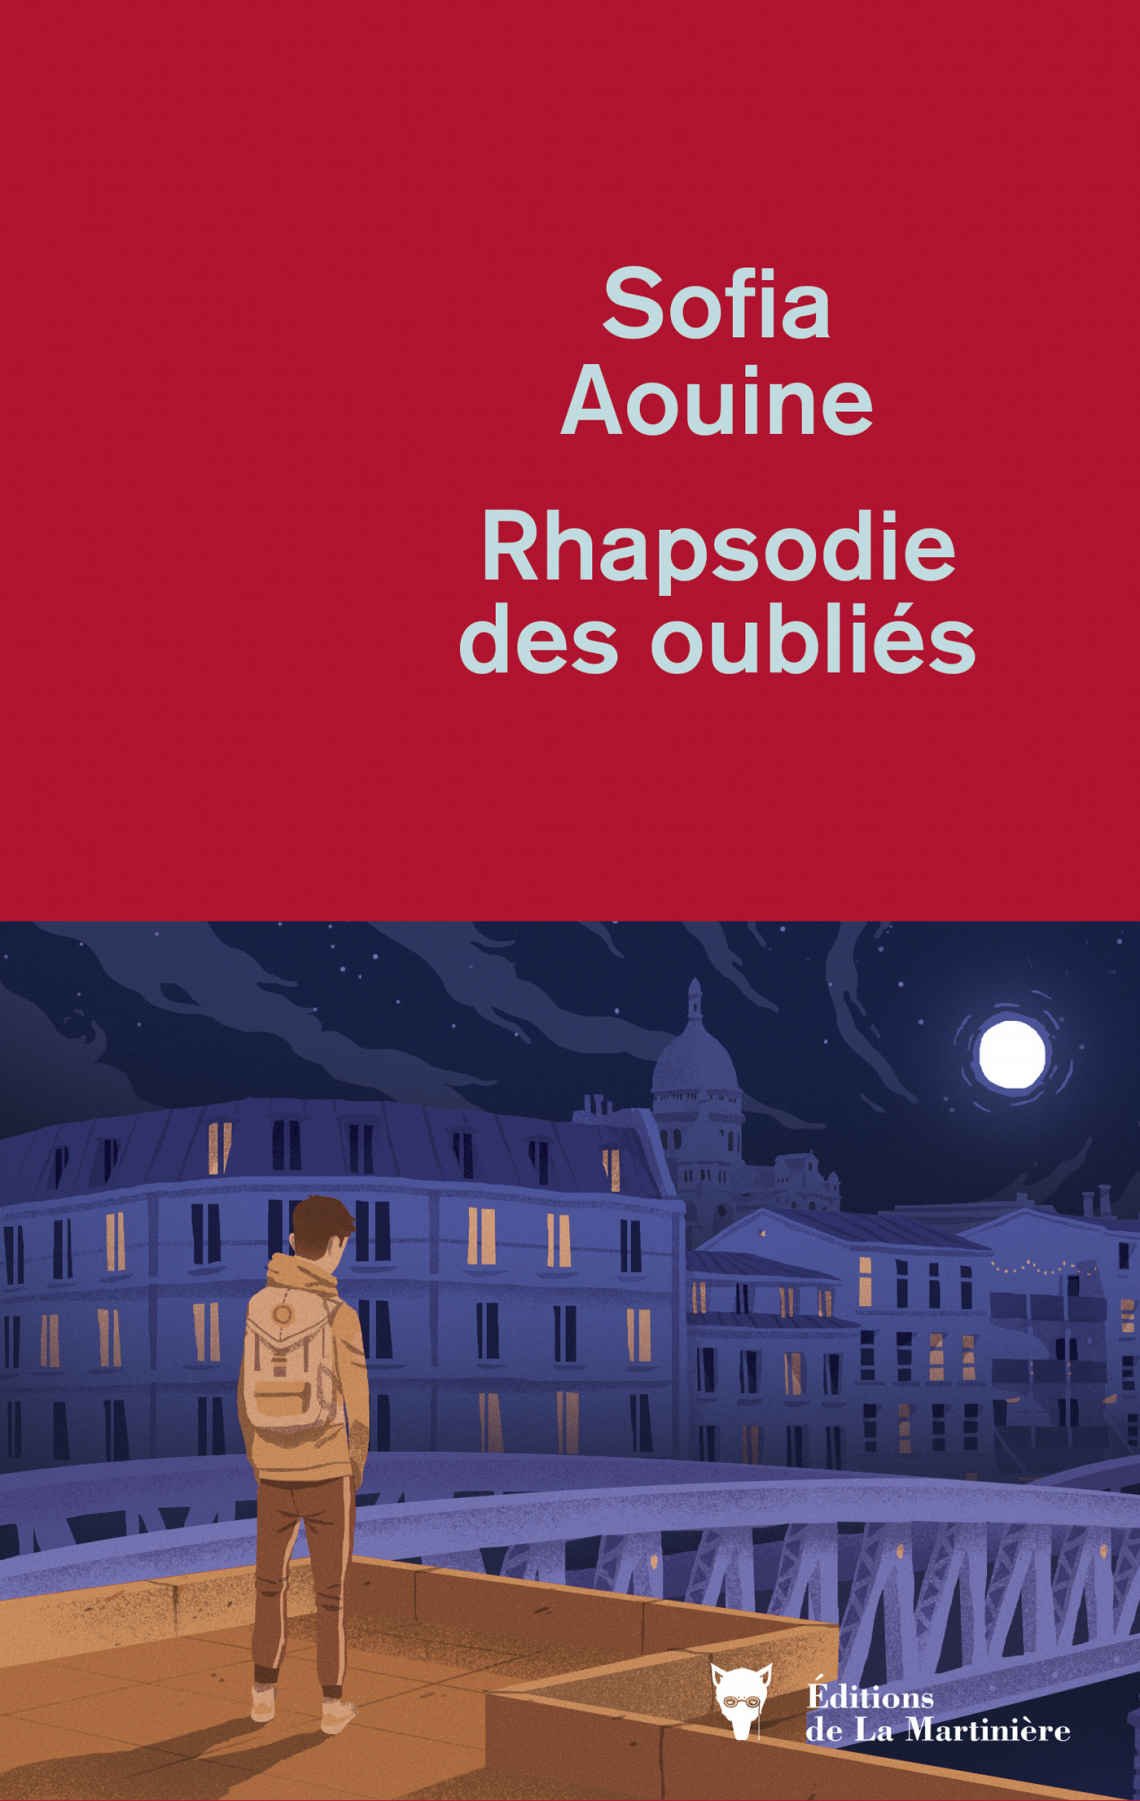 Rhapsodie des oubliés, de Sofia Aouine, La Martinière, 208 pages, 18 euros